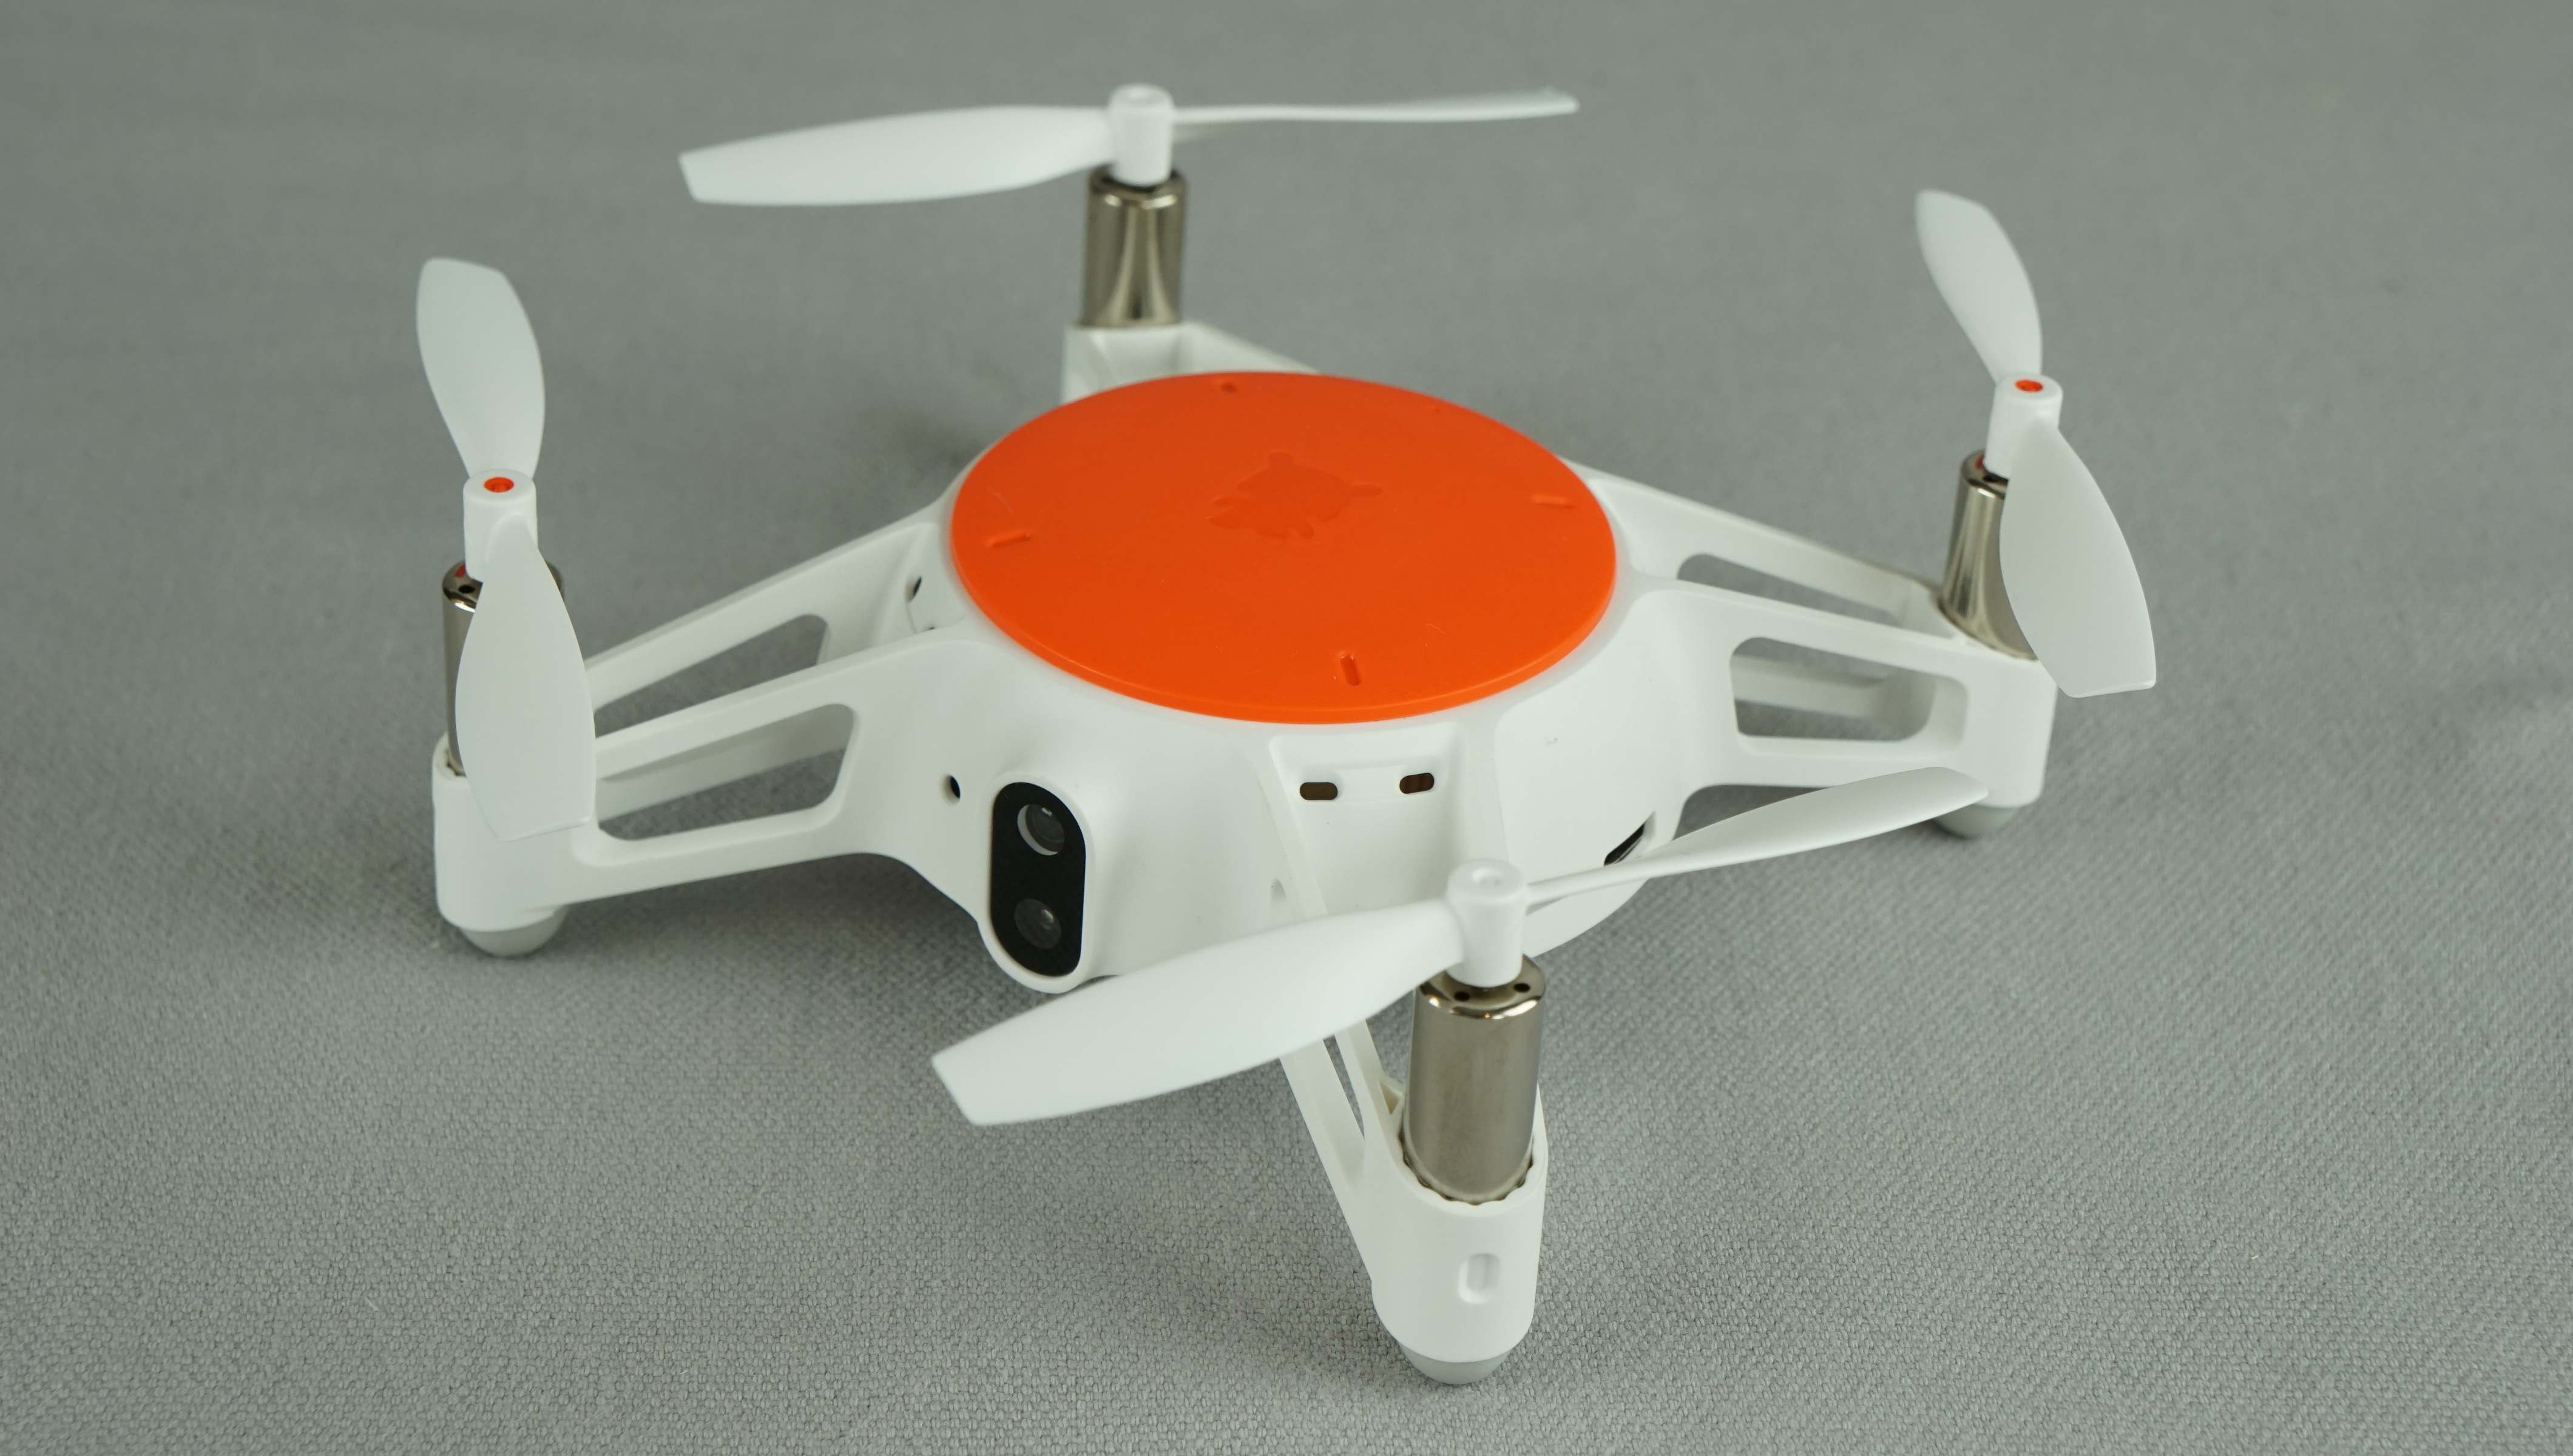 xiaomi mini drone